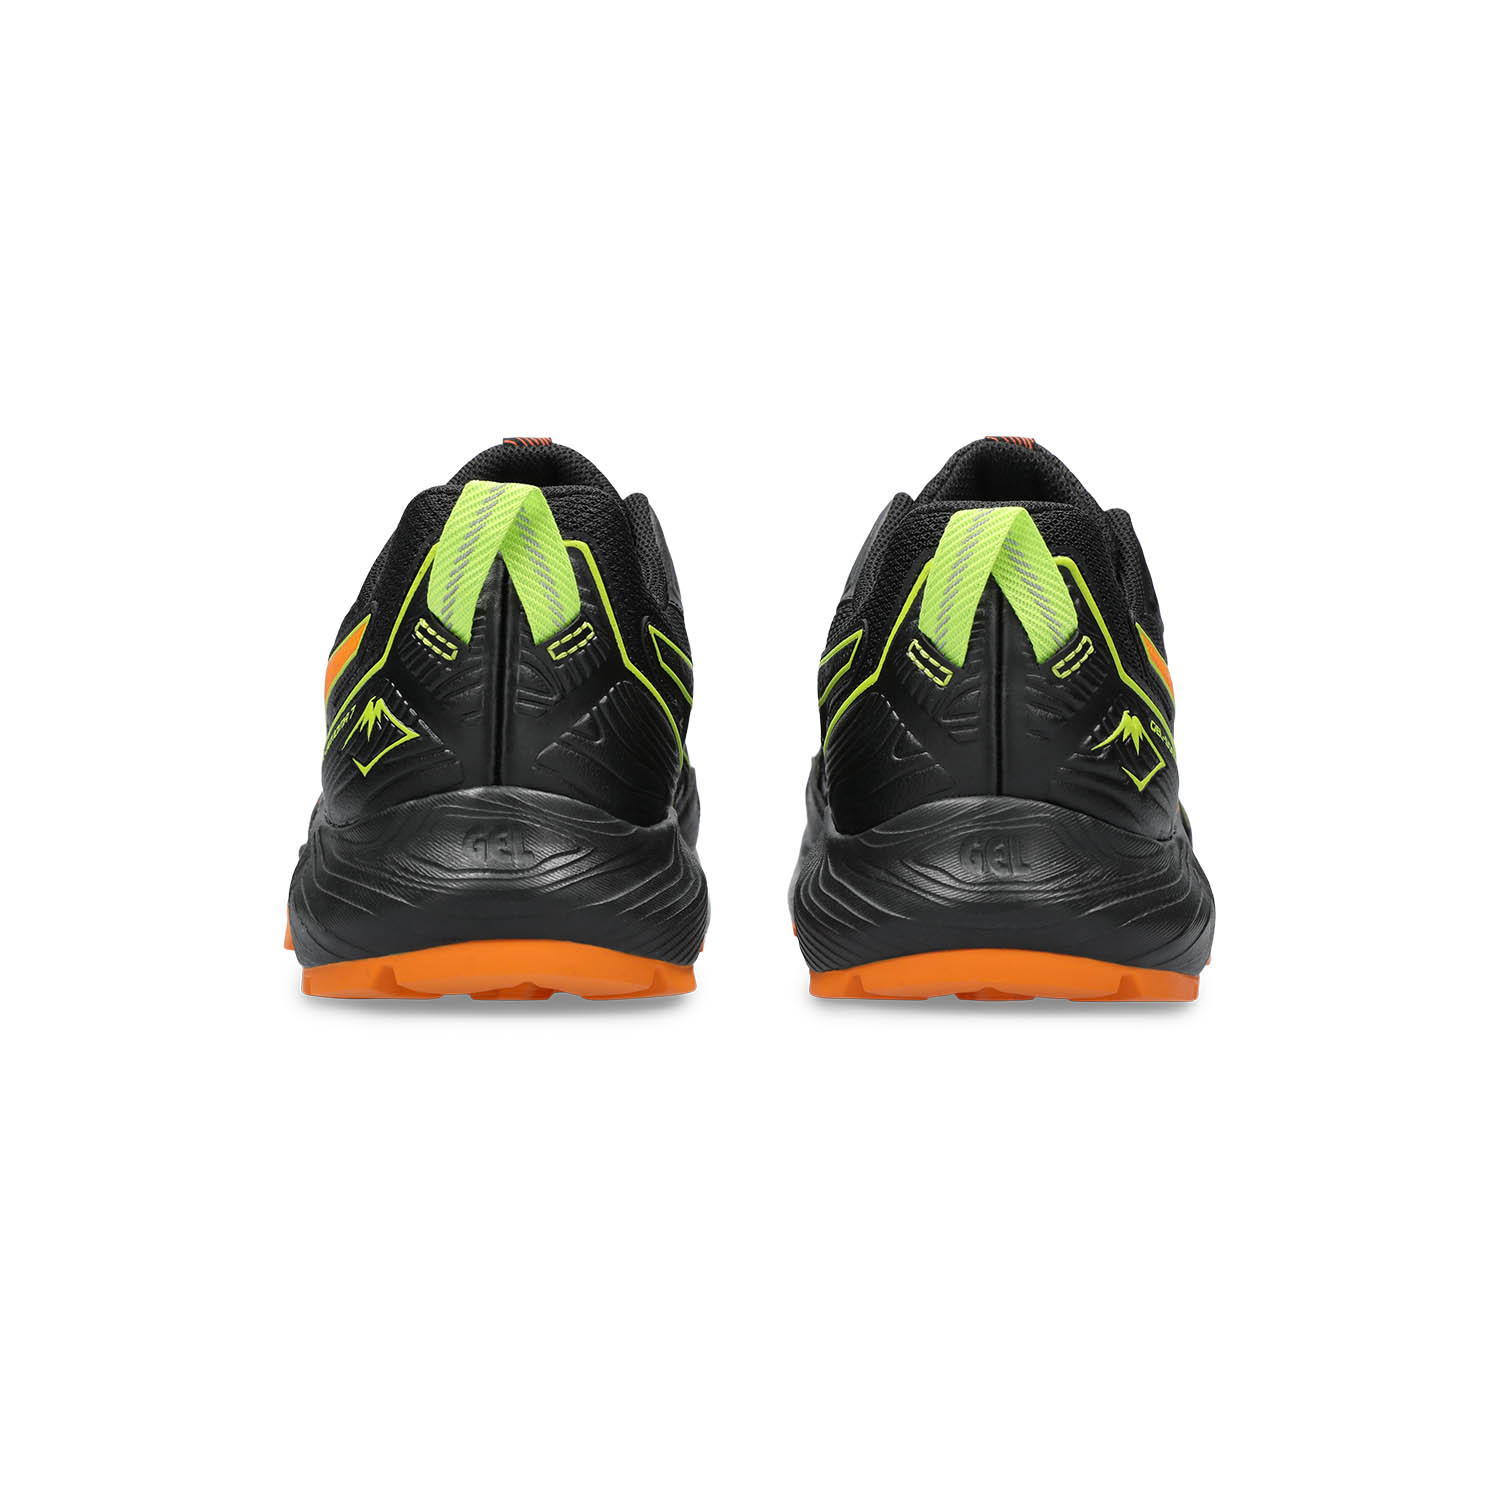 Asics Gel Sonoma 7 Men's Trail Running Shoes - Black